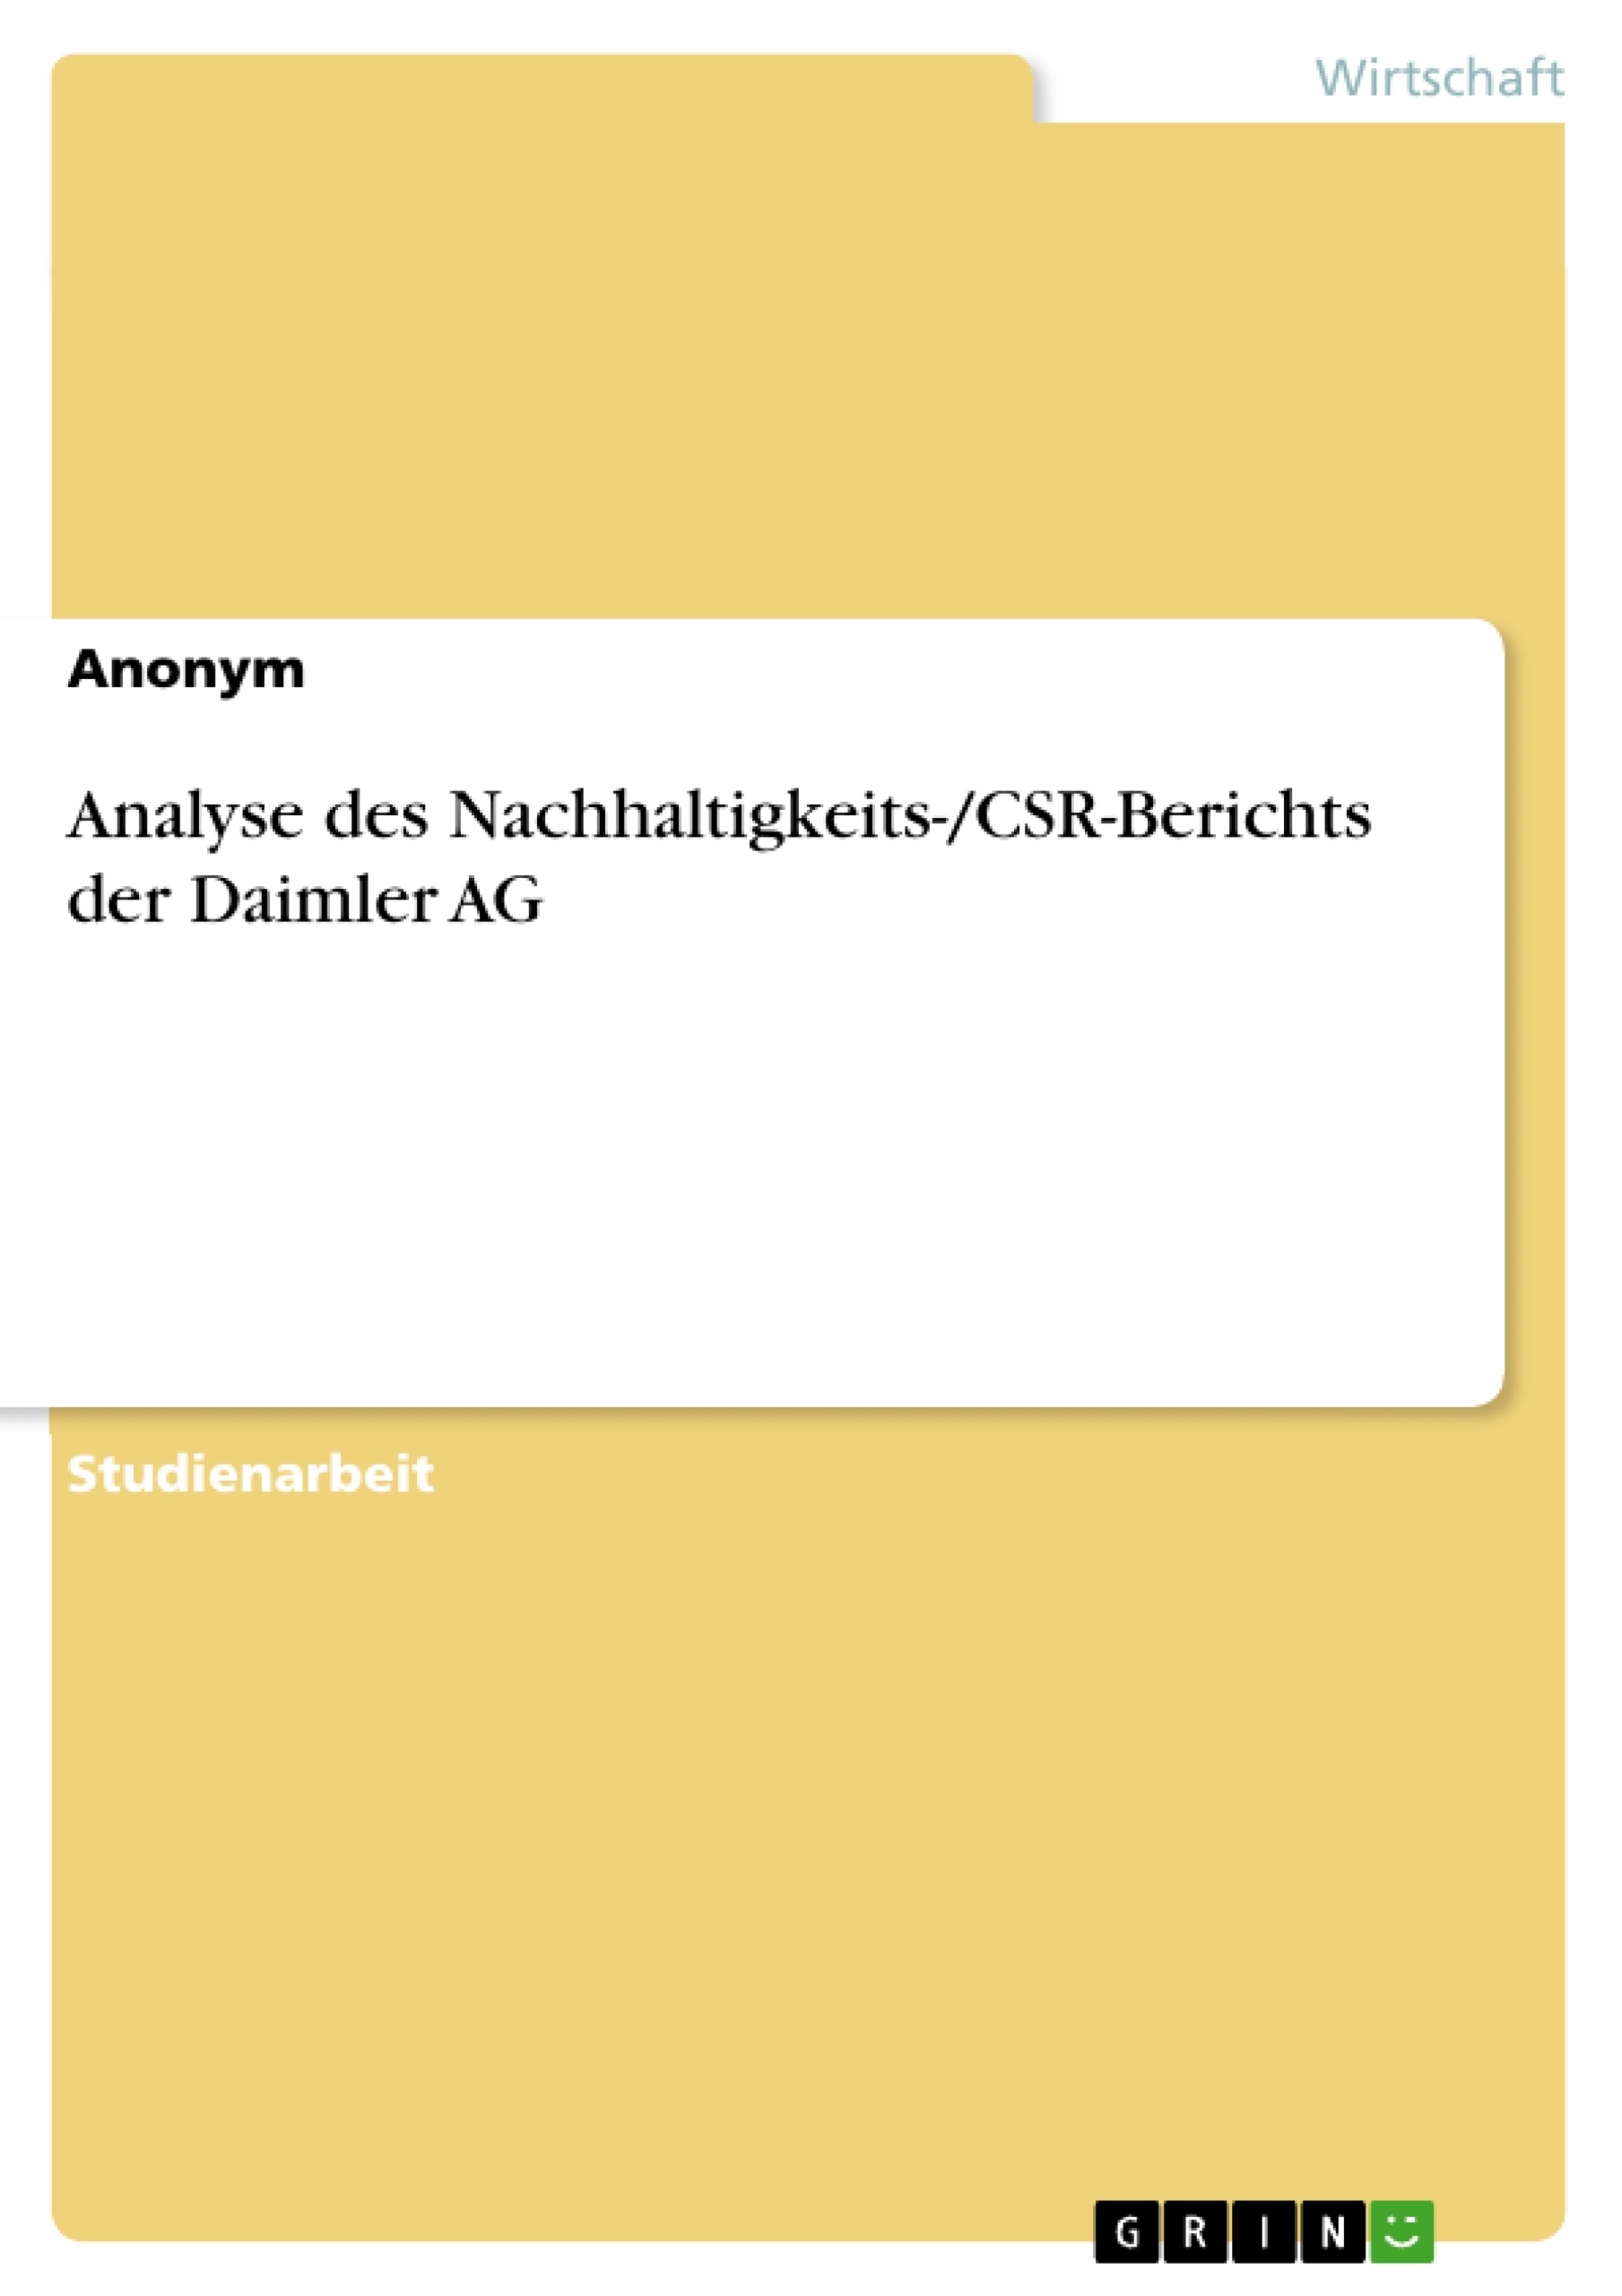 Title: Analyse des Nachhaltigkeits-/CSR-Berichts der Daimler AG